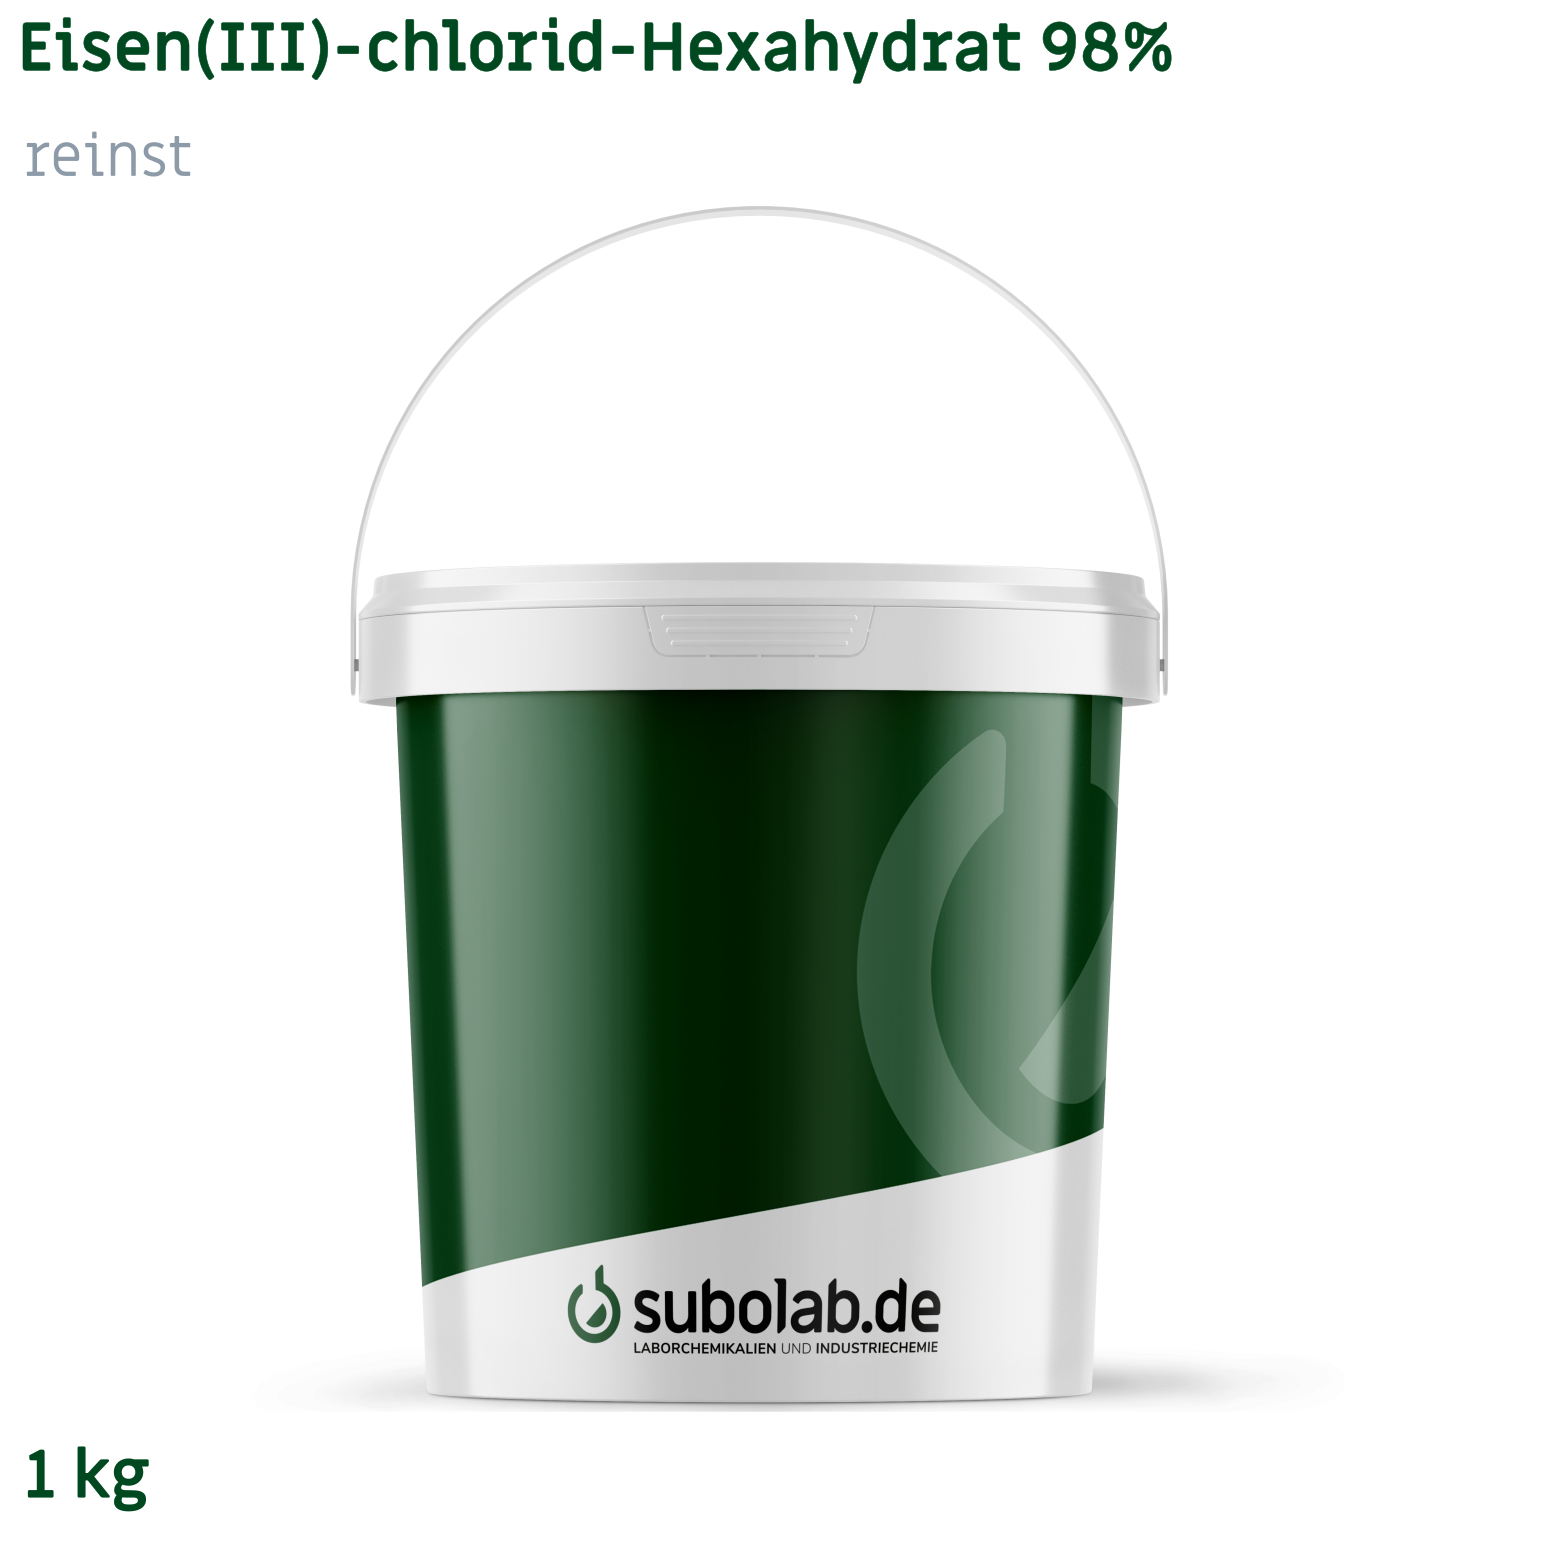 Bild von Eisen(III)-chlorid - Hexahydrat 98% reinst (1 kg)